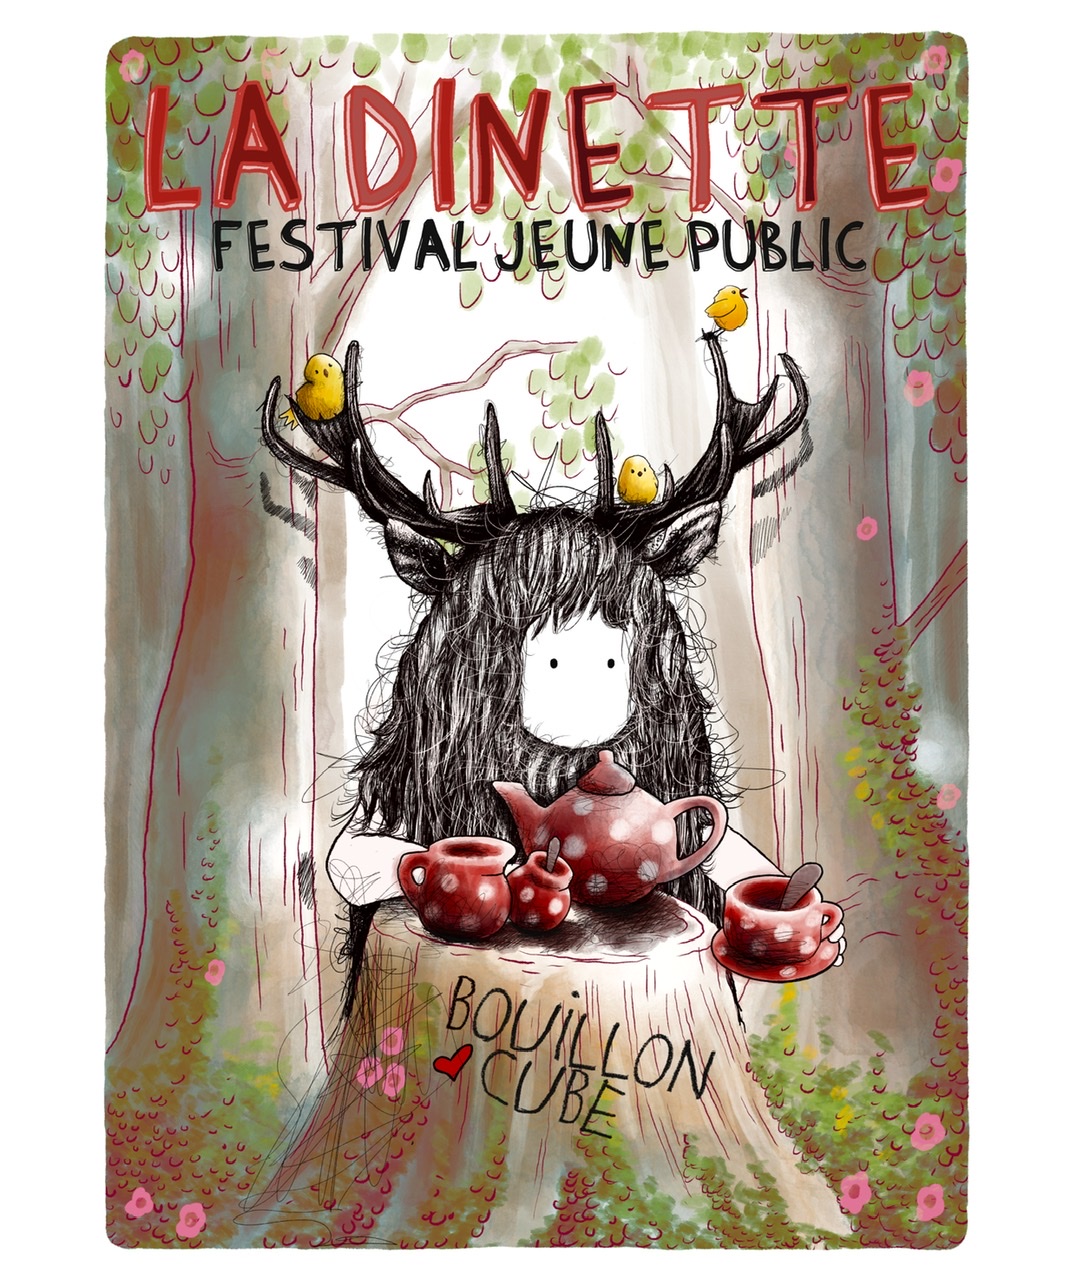 Festival jeune public La Dinette 2022